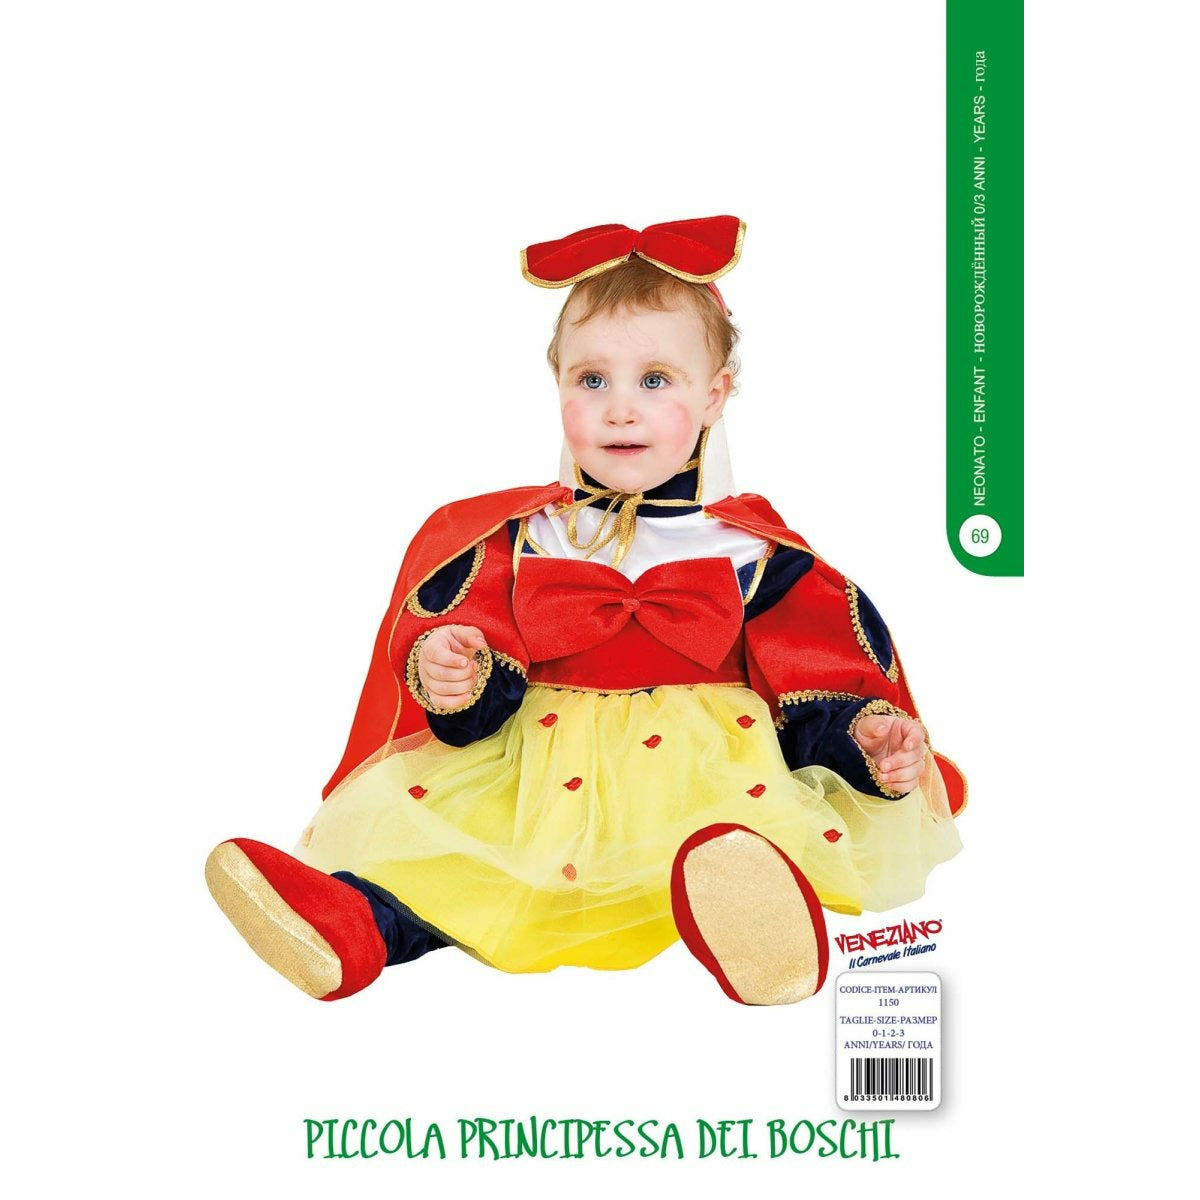 Piccola Principessa dei Boschi - Mstore016 - Carnevale neonata - Veneziano